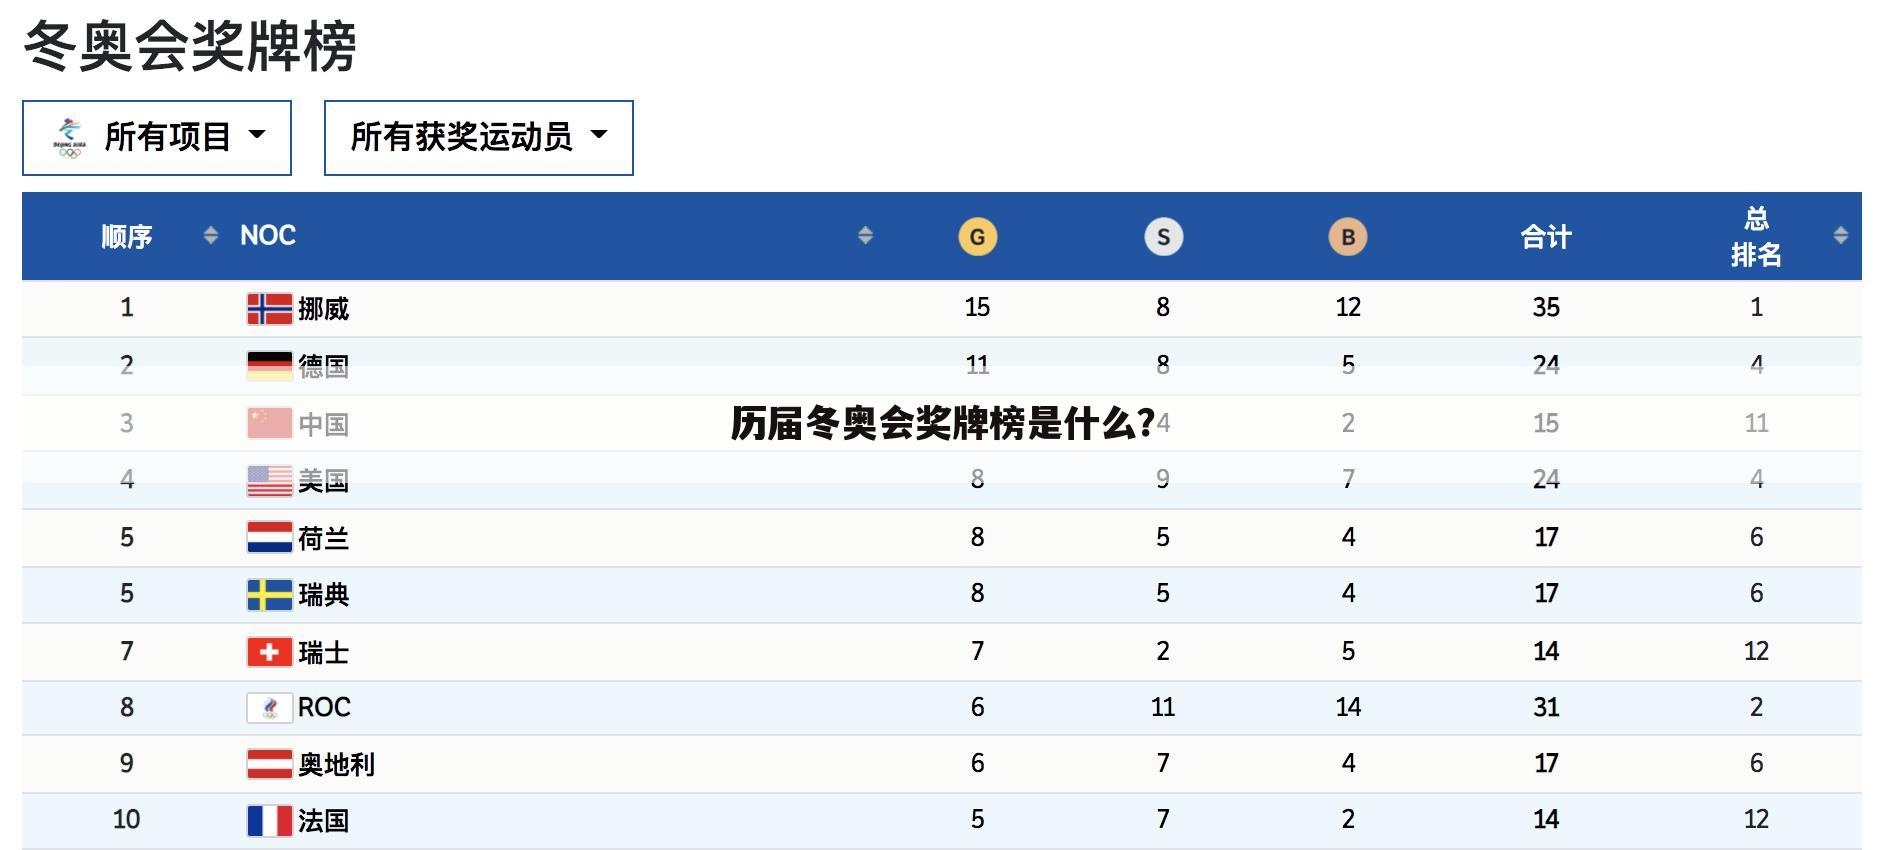 〔2014冬季奥运会〕2014冬季奥运会奖牌榜排名